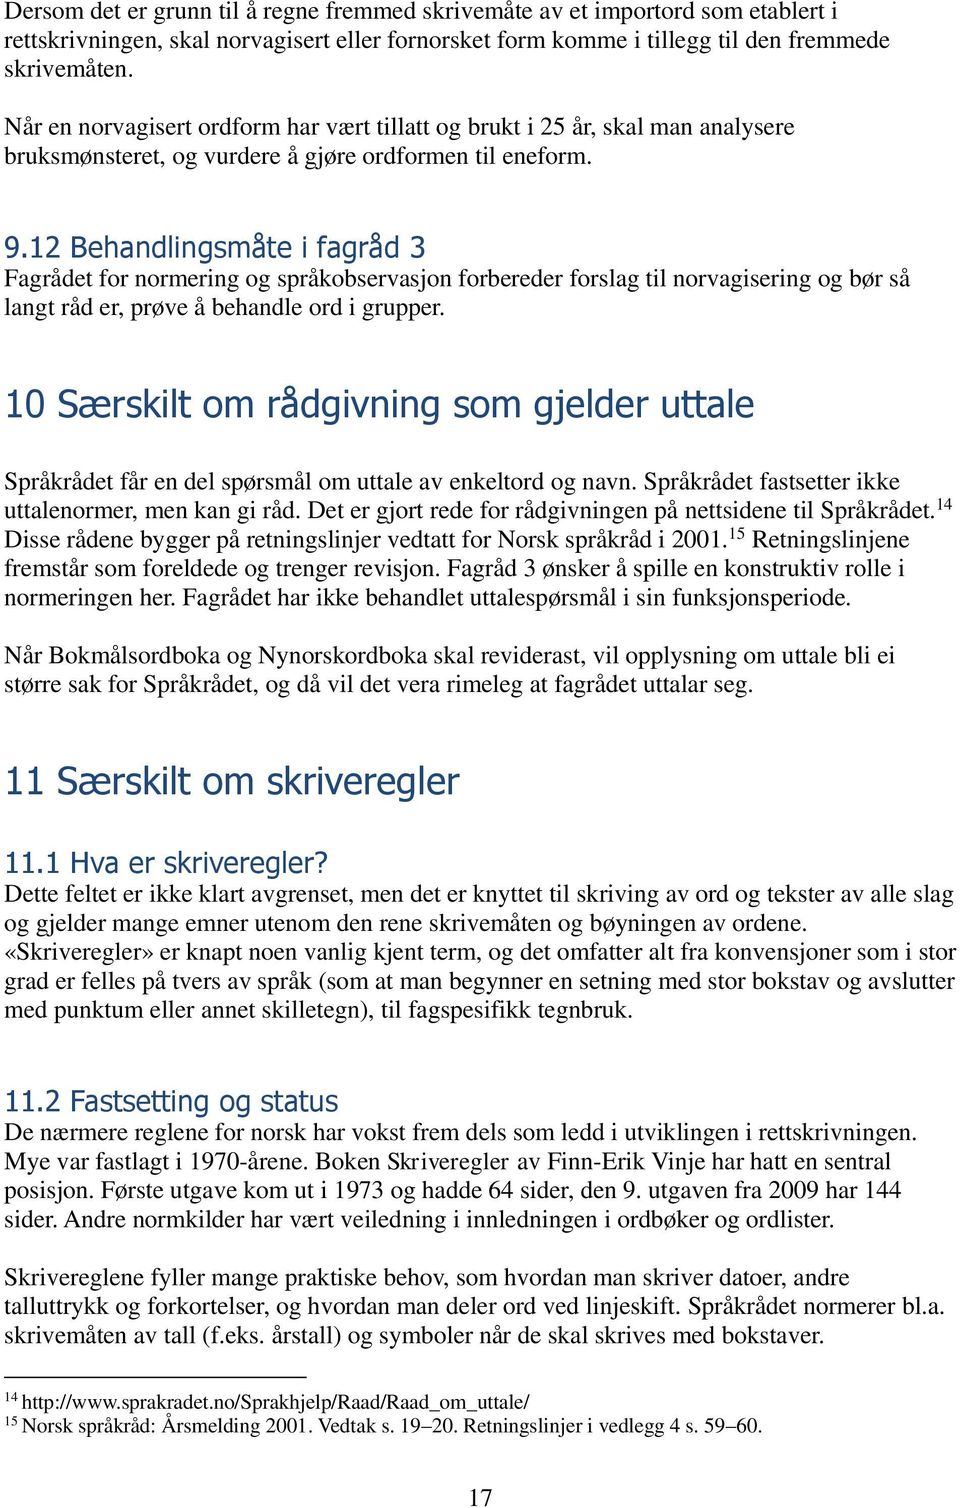 12 Behandlingsmåte i fagråd 3 Fagrådet for normering og språkobservasjon forbereder forslag til norvagisering og bør så langt råd er, prøve å behandle ord i grupper.